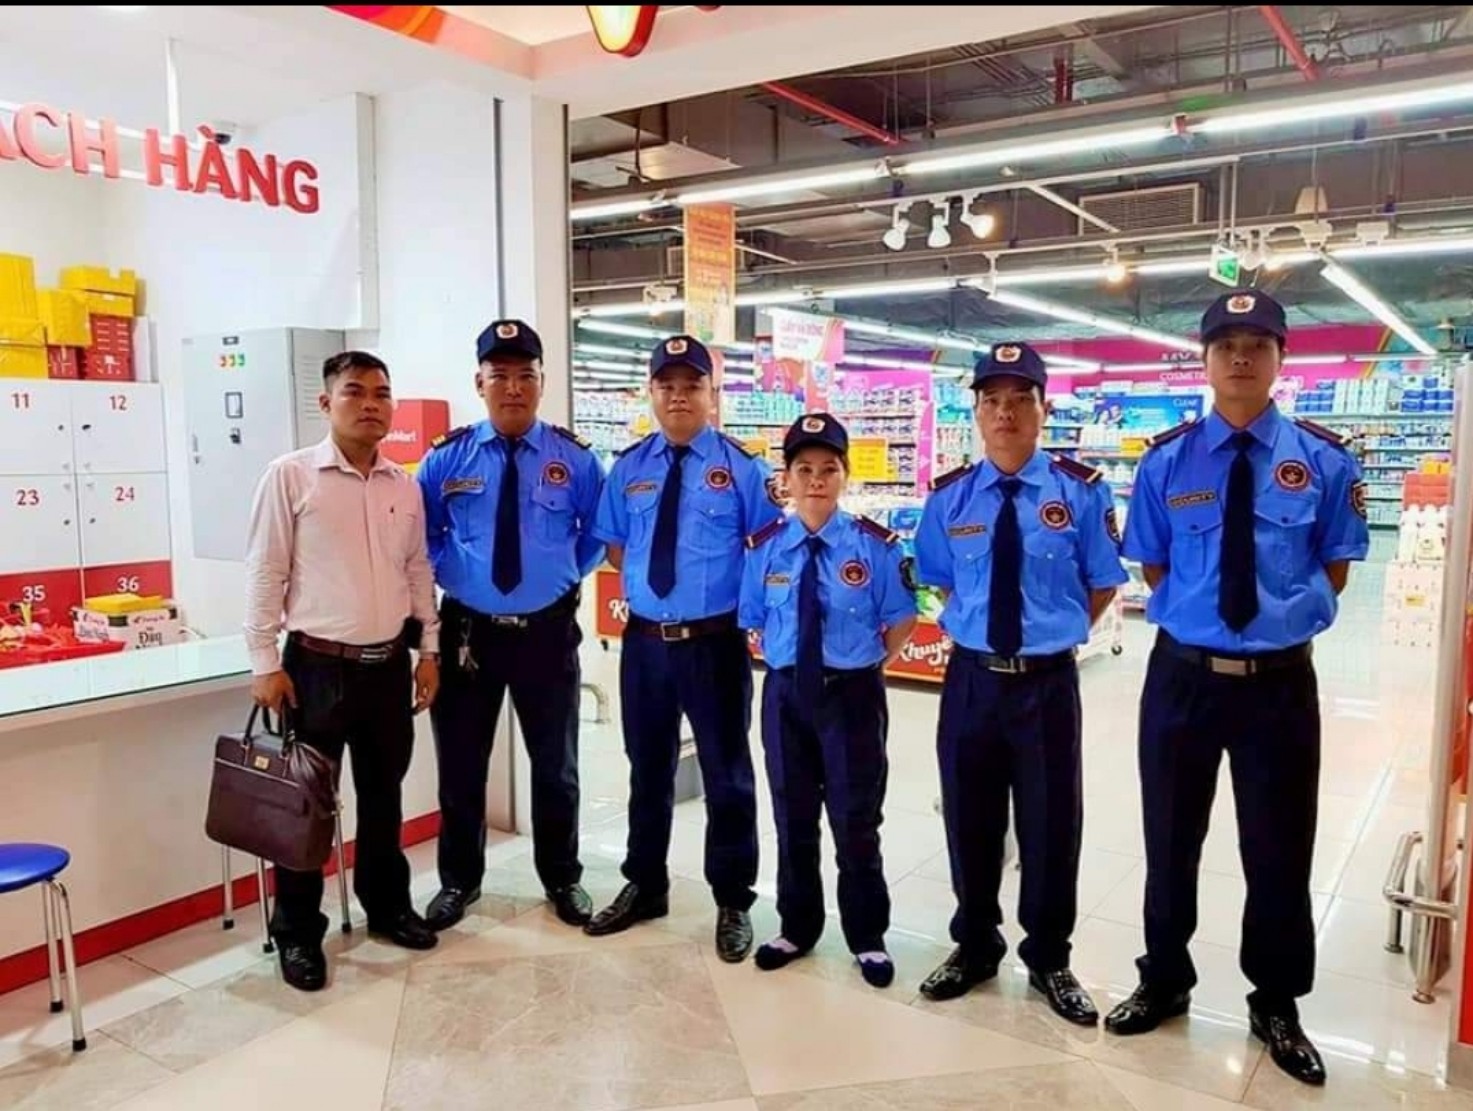 Dịch vụ bảo vệ yếu nhân tại Đà Nẵng